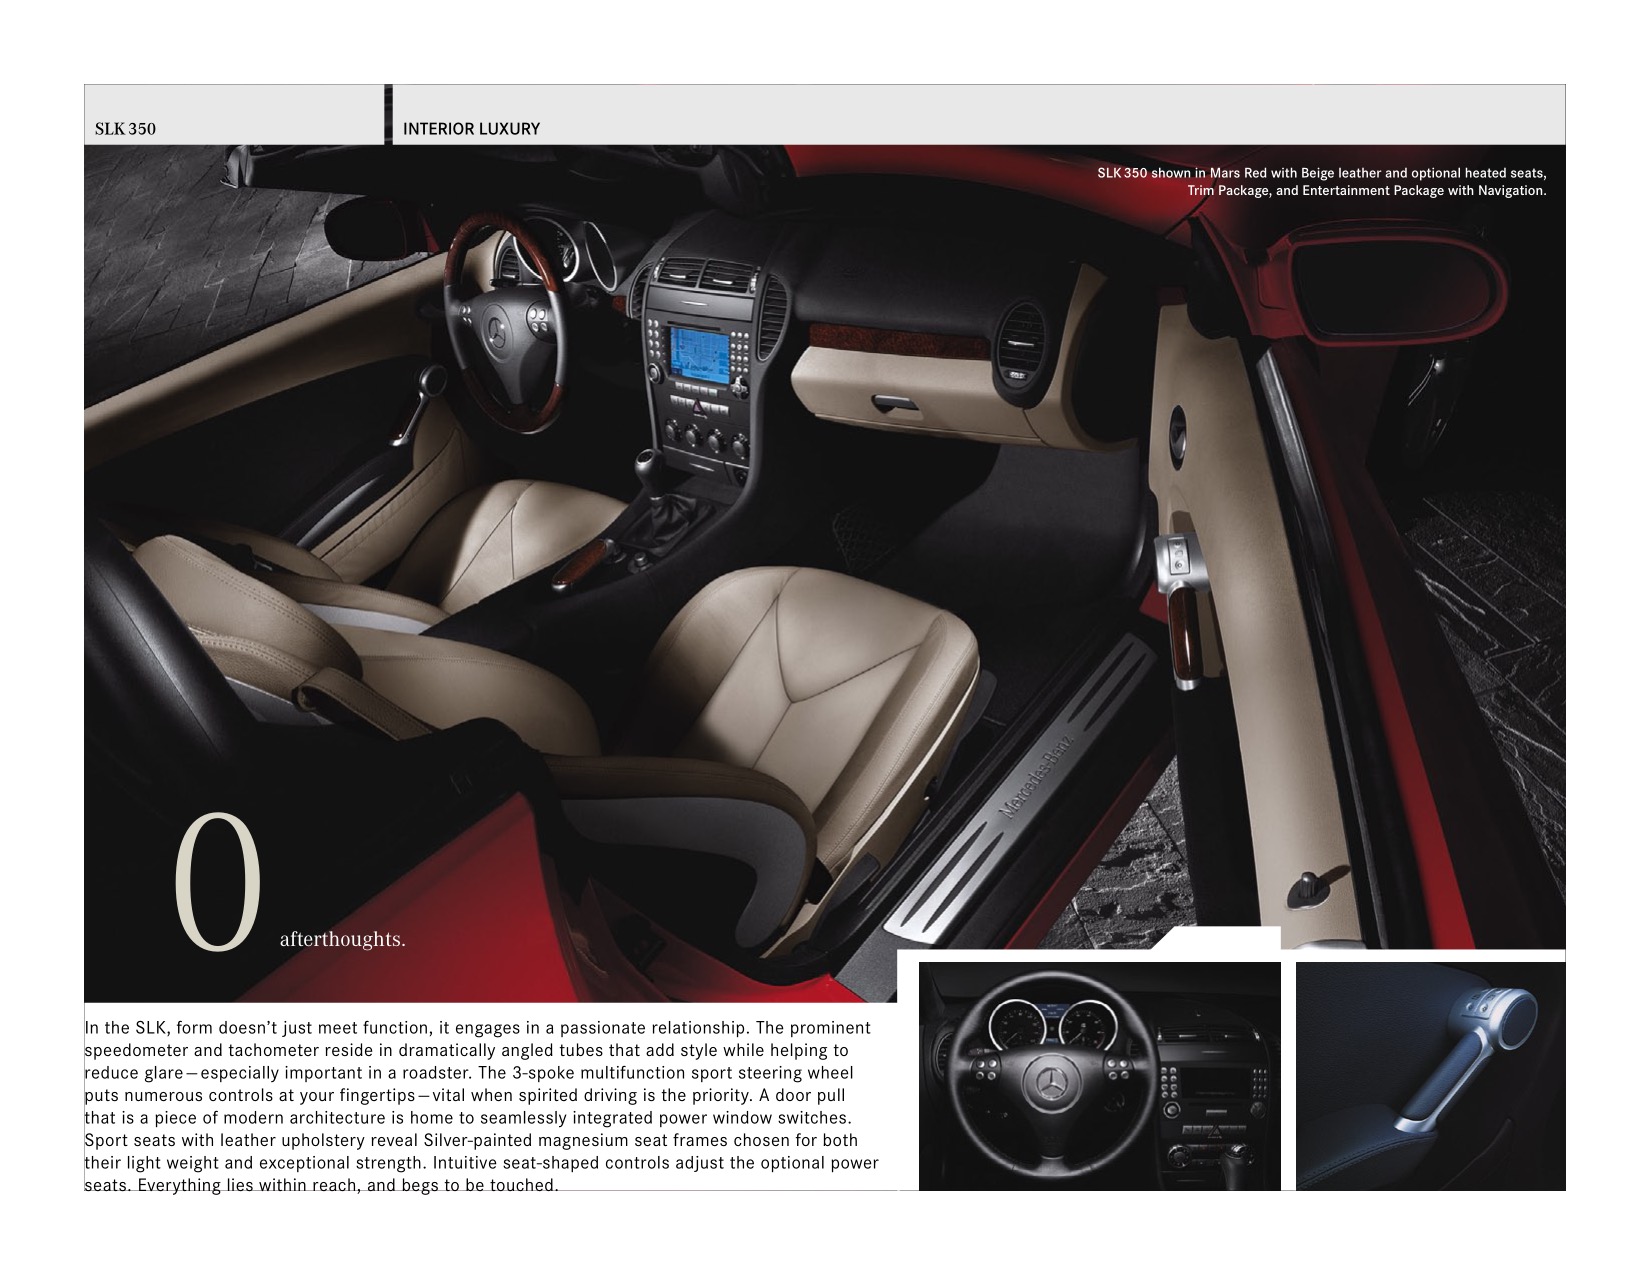 2005 Mercedes-Benz SLK Brochure Page 10